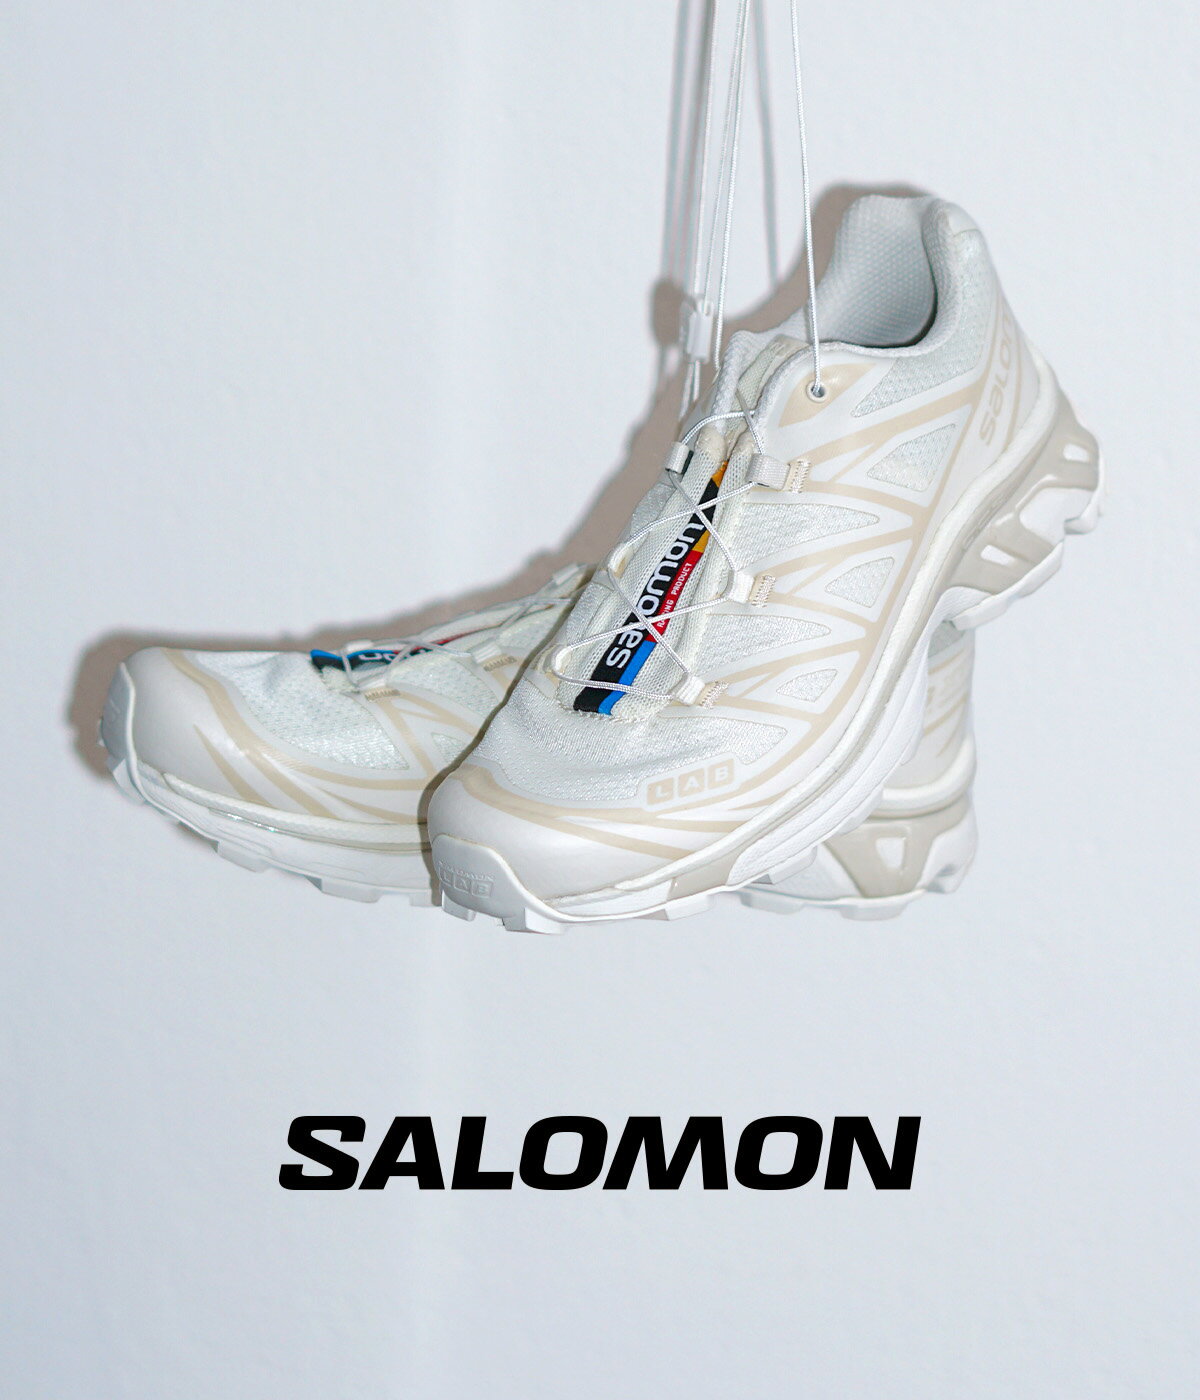 SALOMON SNEAKERS / サロモン スニーカーズ : 【レディース】XT-6 : 2024SS サロモン Salomon スニーカー シューズ 靴 バニラアイス ホワイト 白 ローカット ランニング シューズ アウトドア トレイルランニング トレッキング スポーティー : L47445300【ANN】